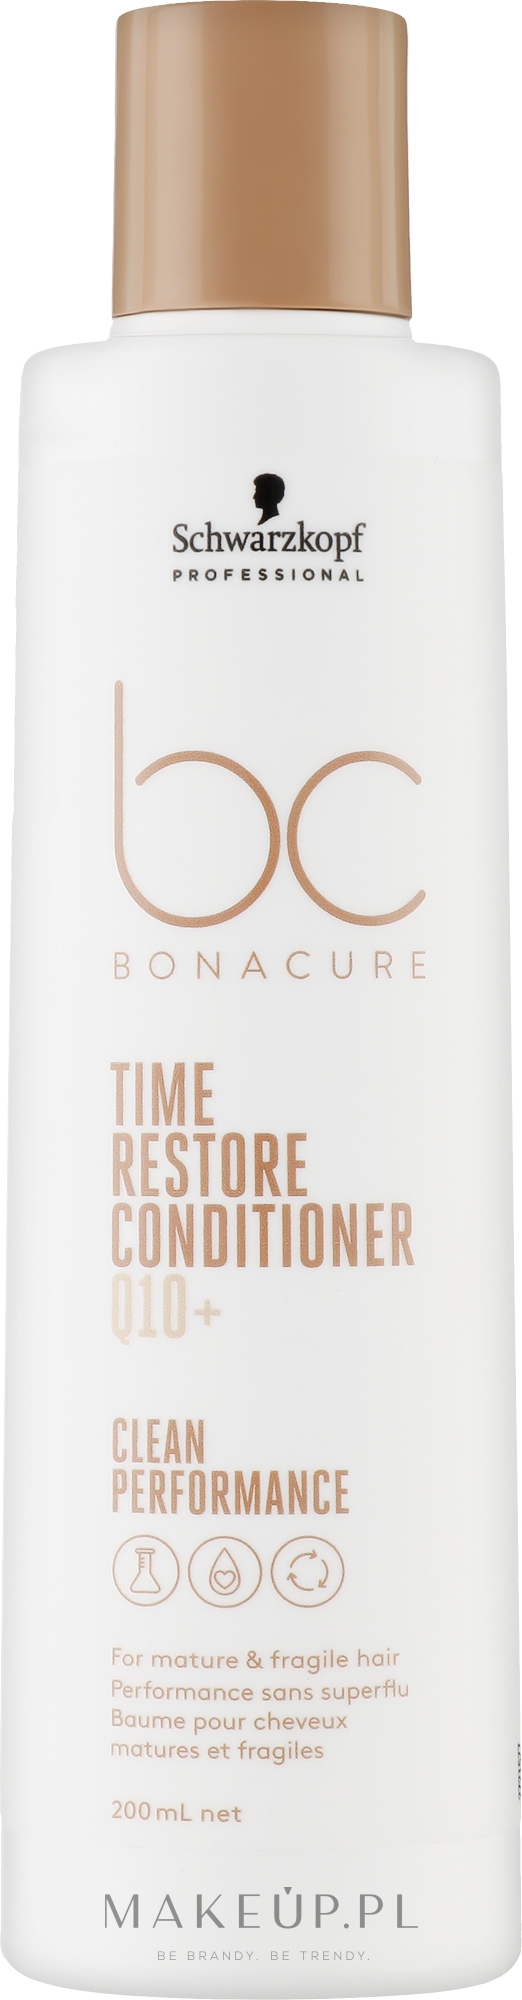 Odżywka do włosów bez spłukiwania - Schwarzkopf Professional Bonacure Time Restore Conditioner Q10+ — Zdjęcie 200 ml